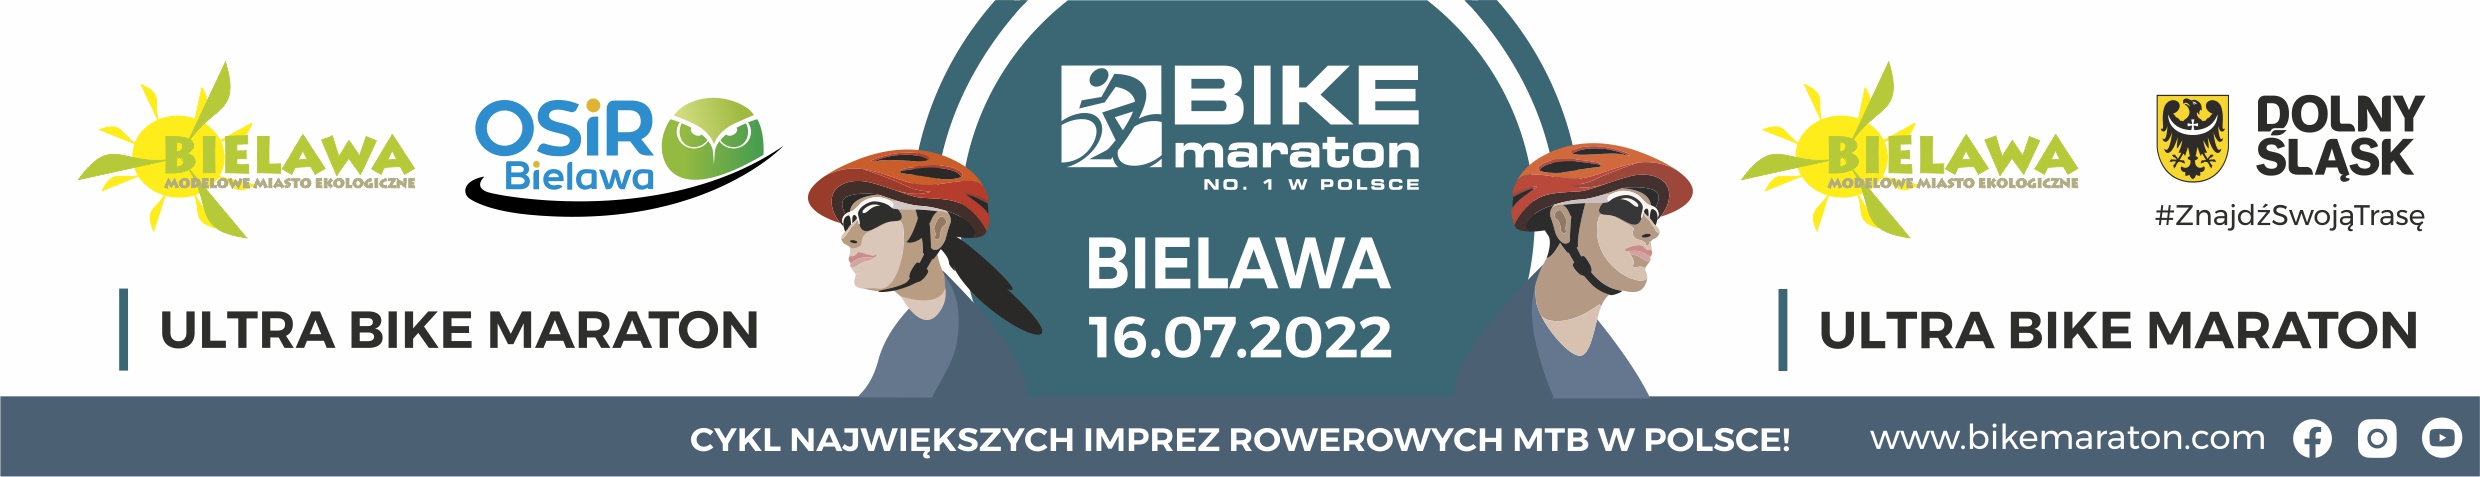 Mocny Paluta i samotna Andrzejewska. Ultra Bike Maraton w Bielawie